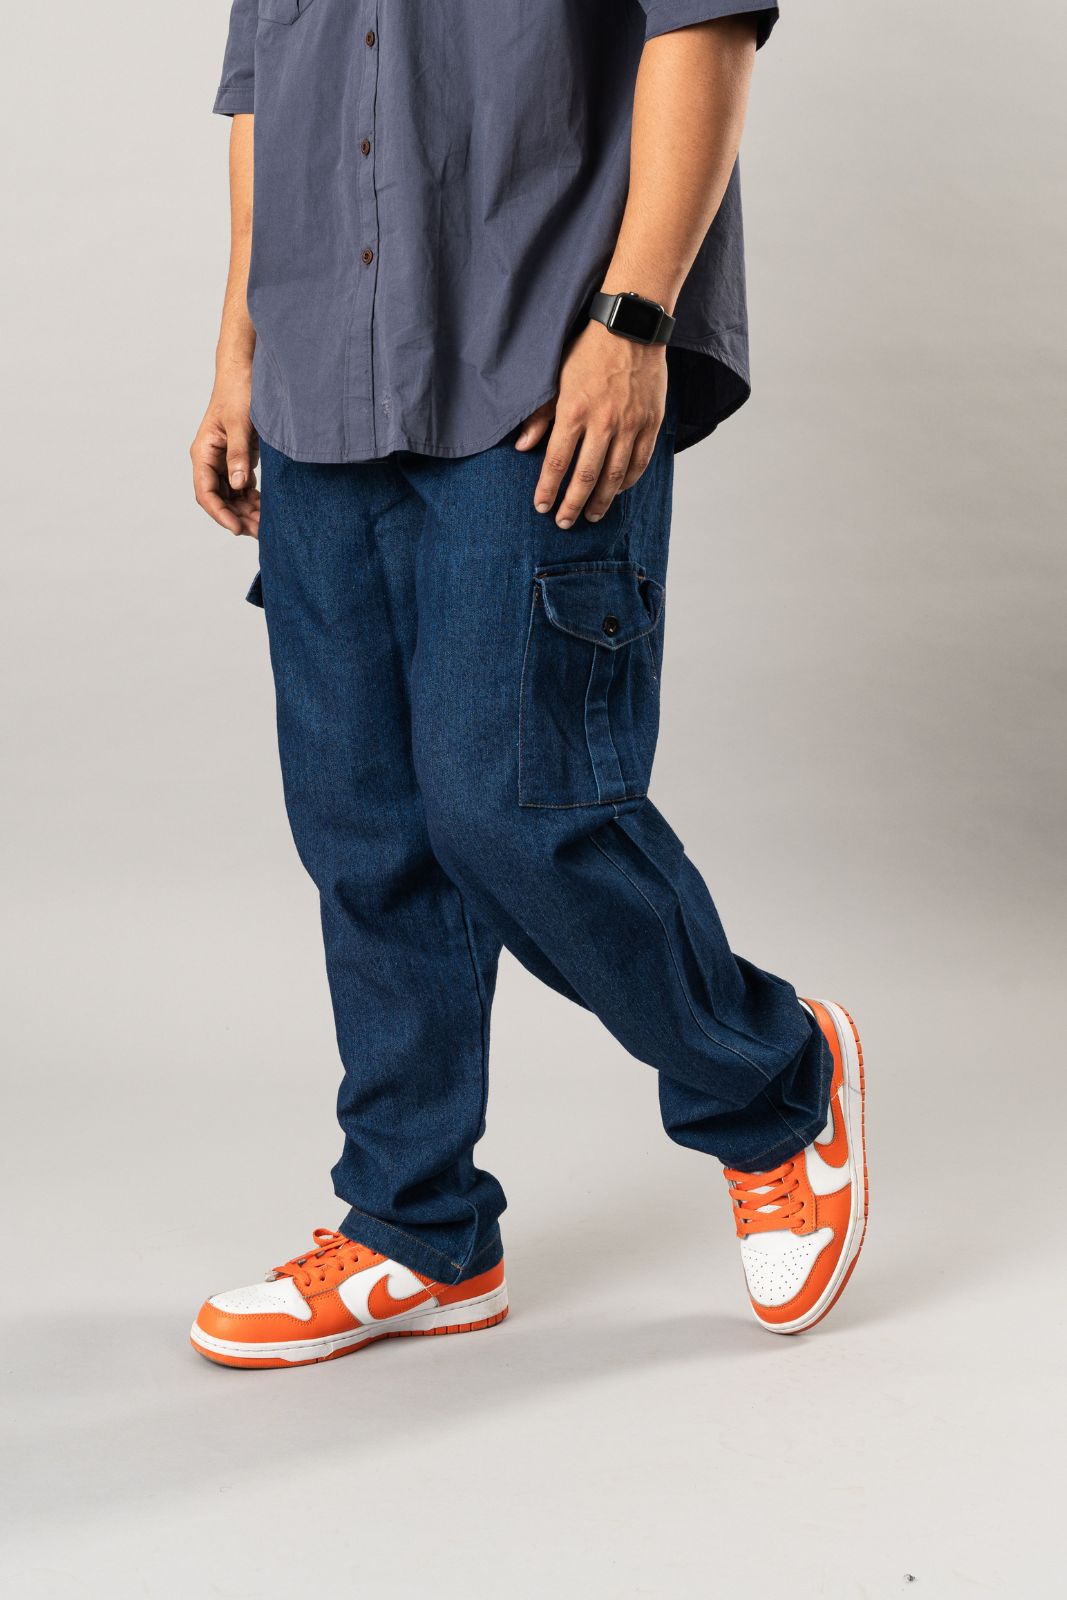 Men Wide Legs Jeans Loose Casual Work Cargo Pants Denim Street Trousers  Oversize | eBay